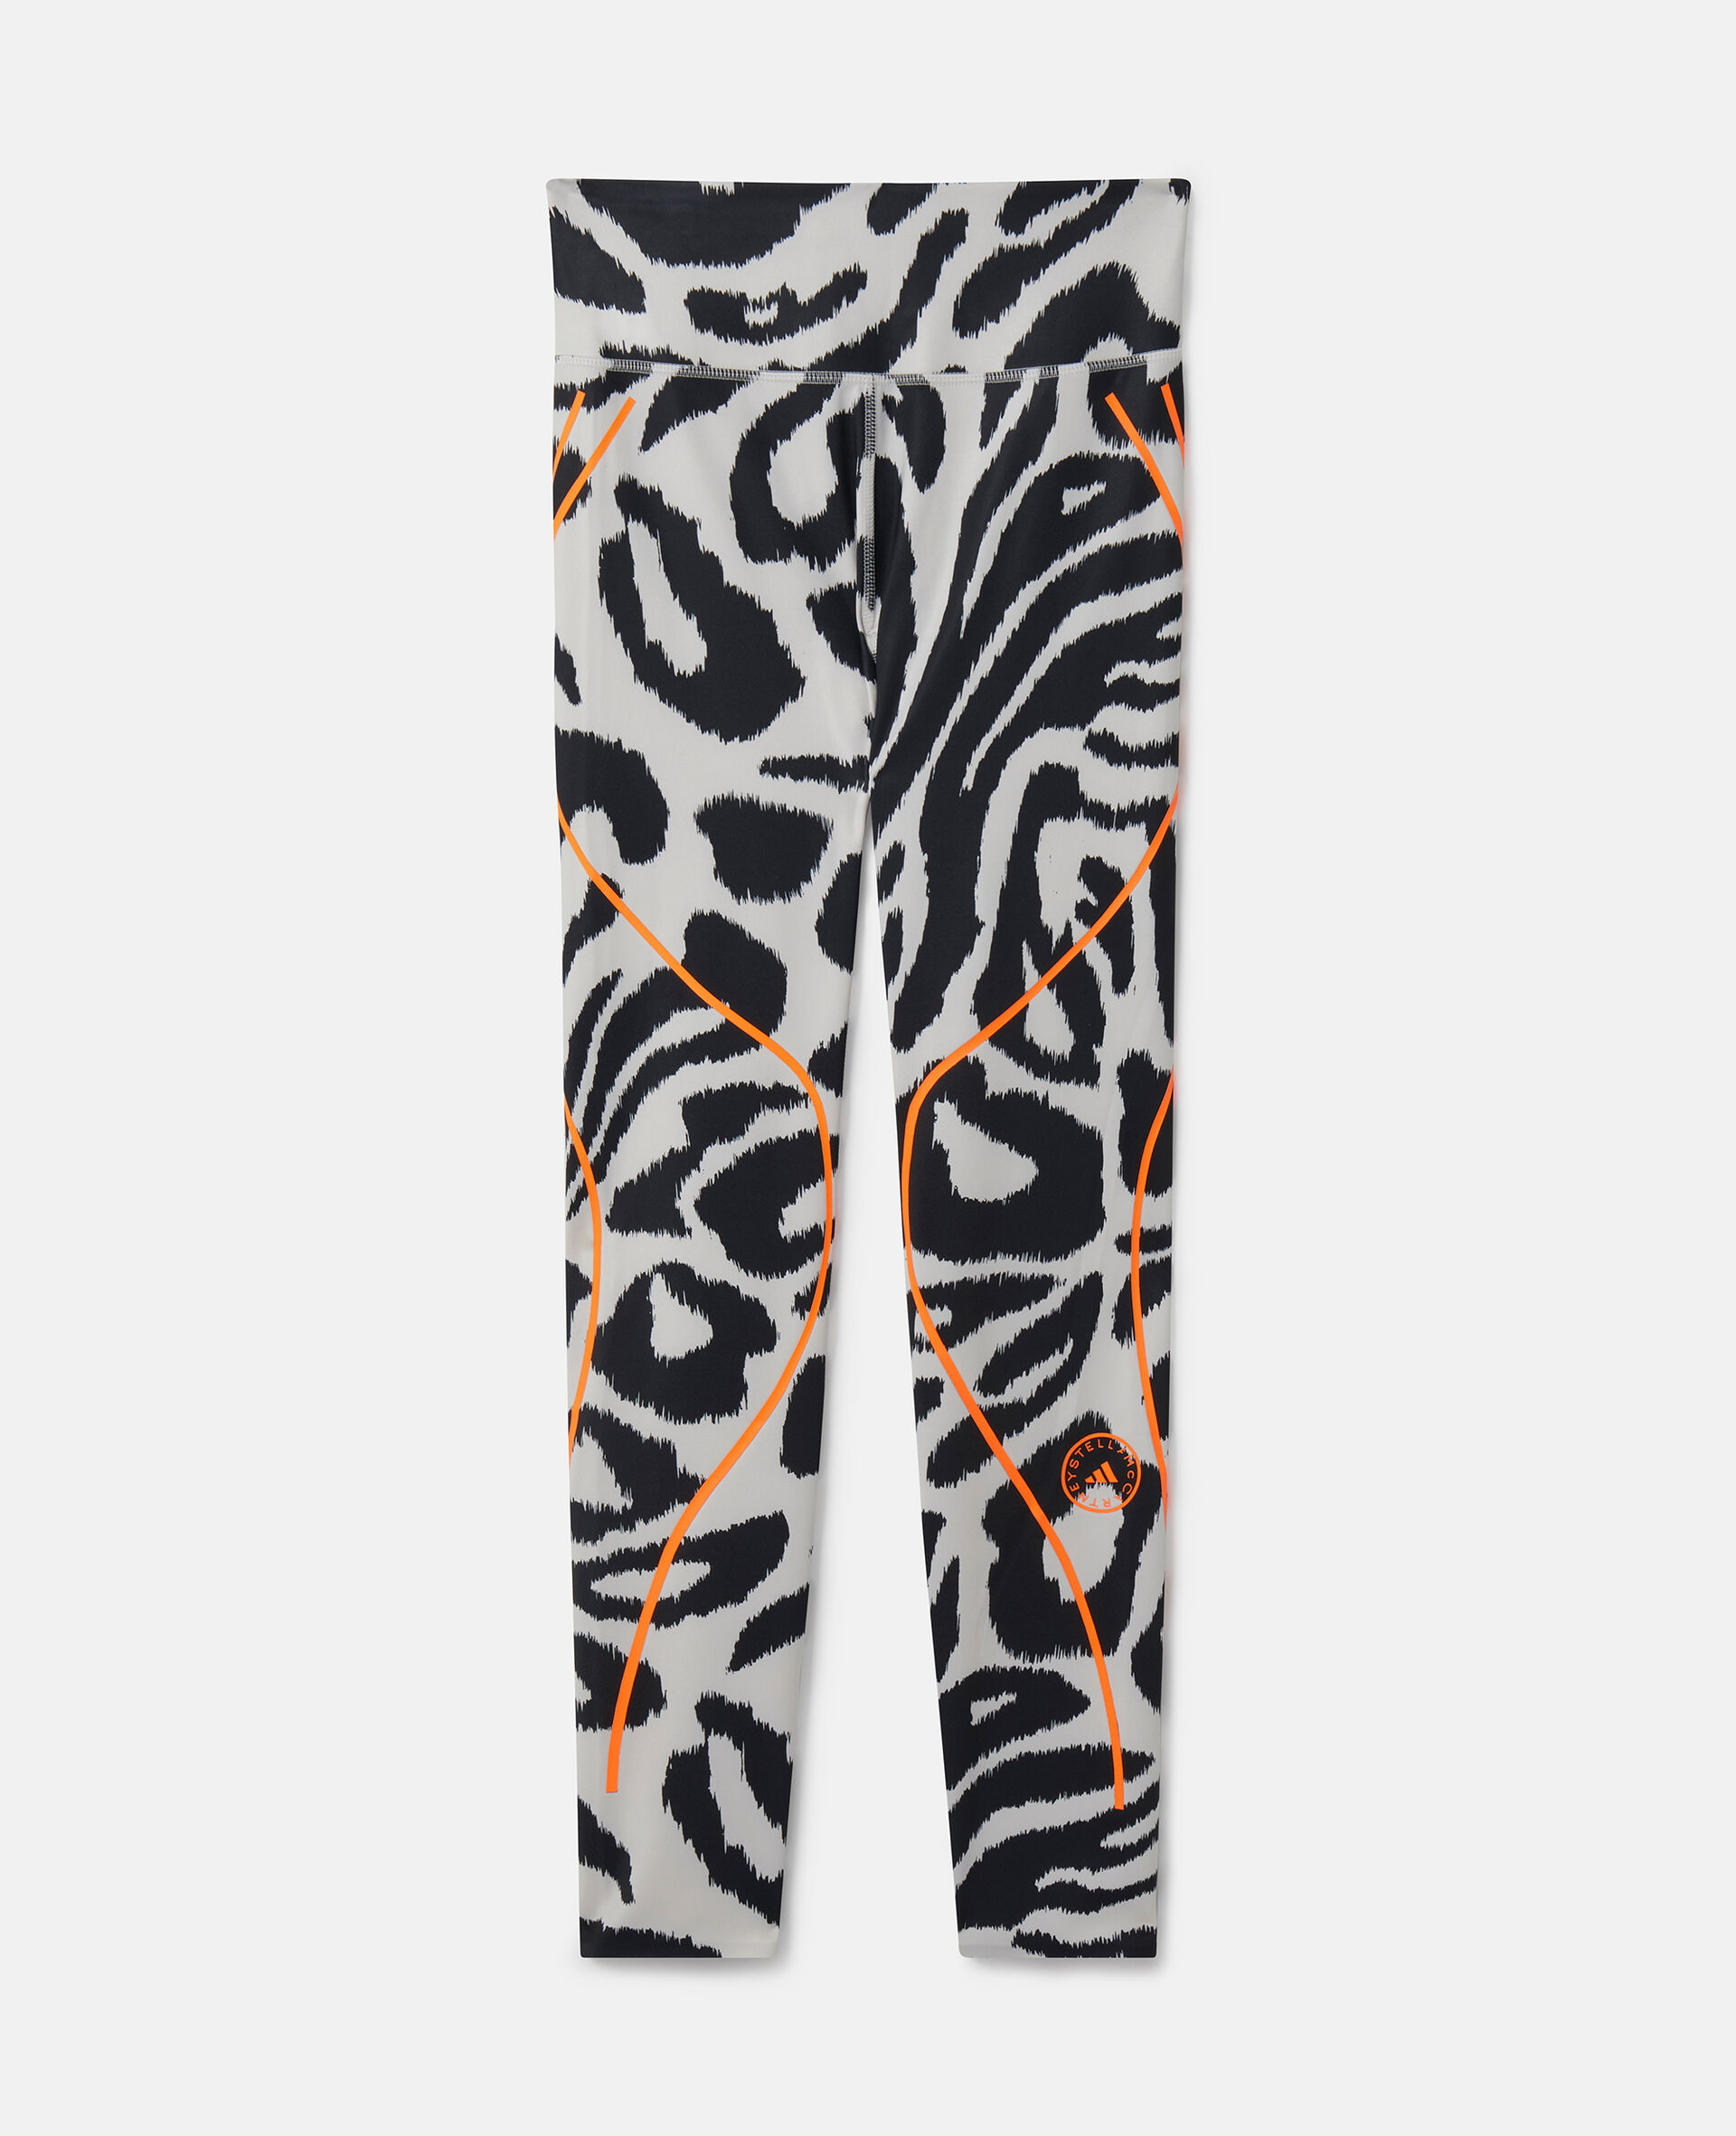 TruePace Leopard Print Running Leggings-Multicolour-medium